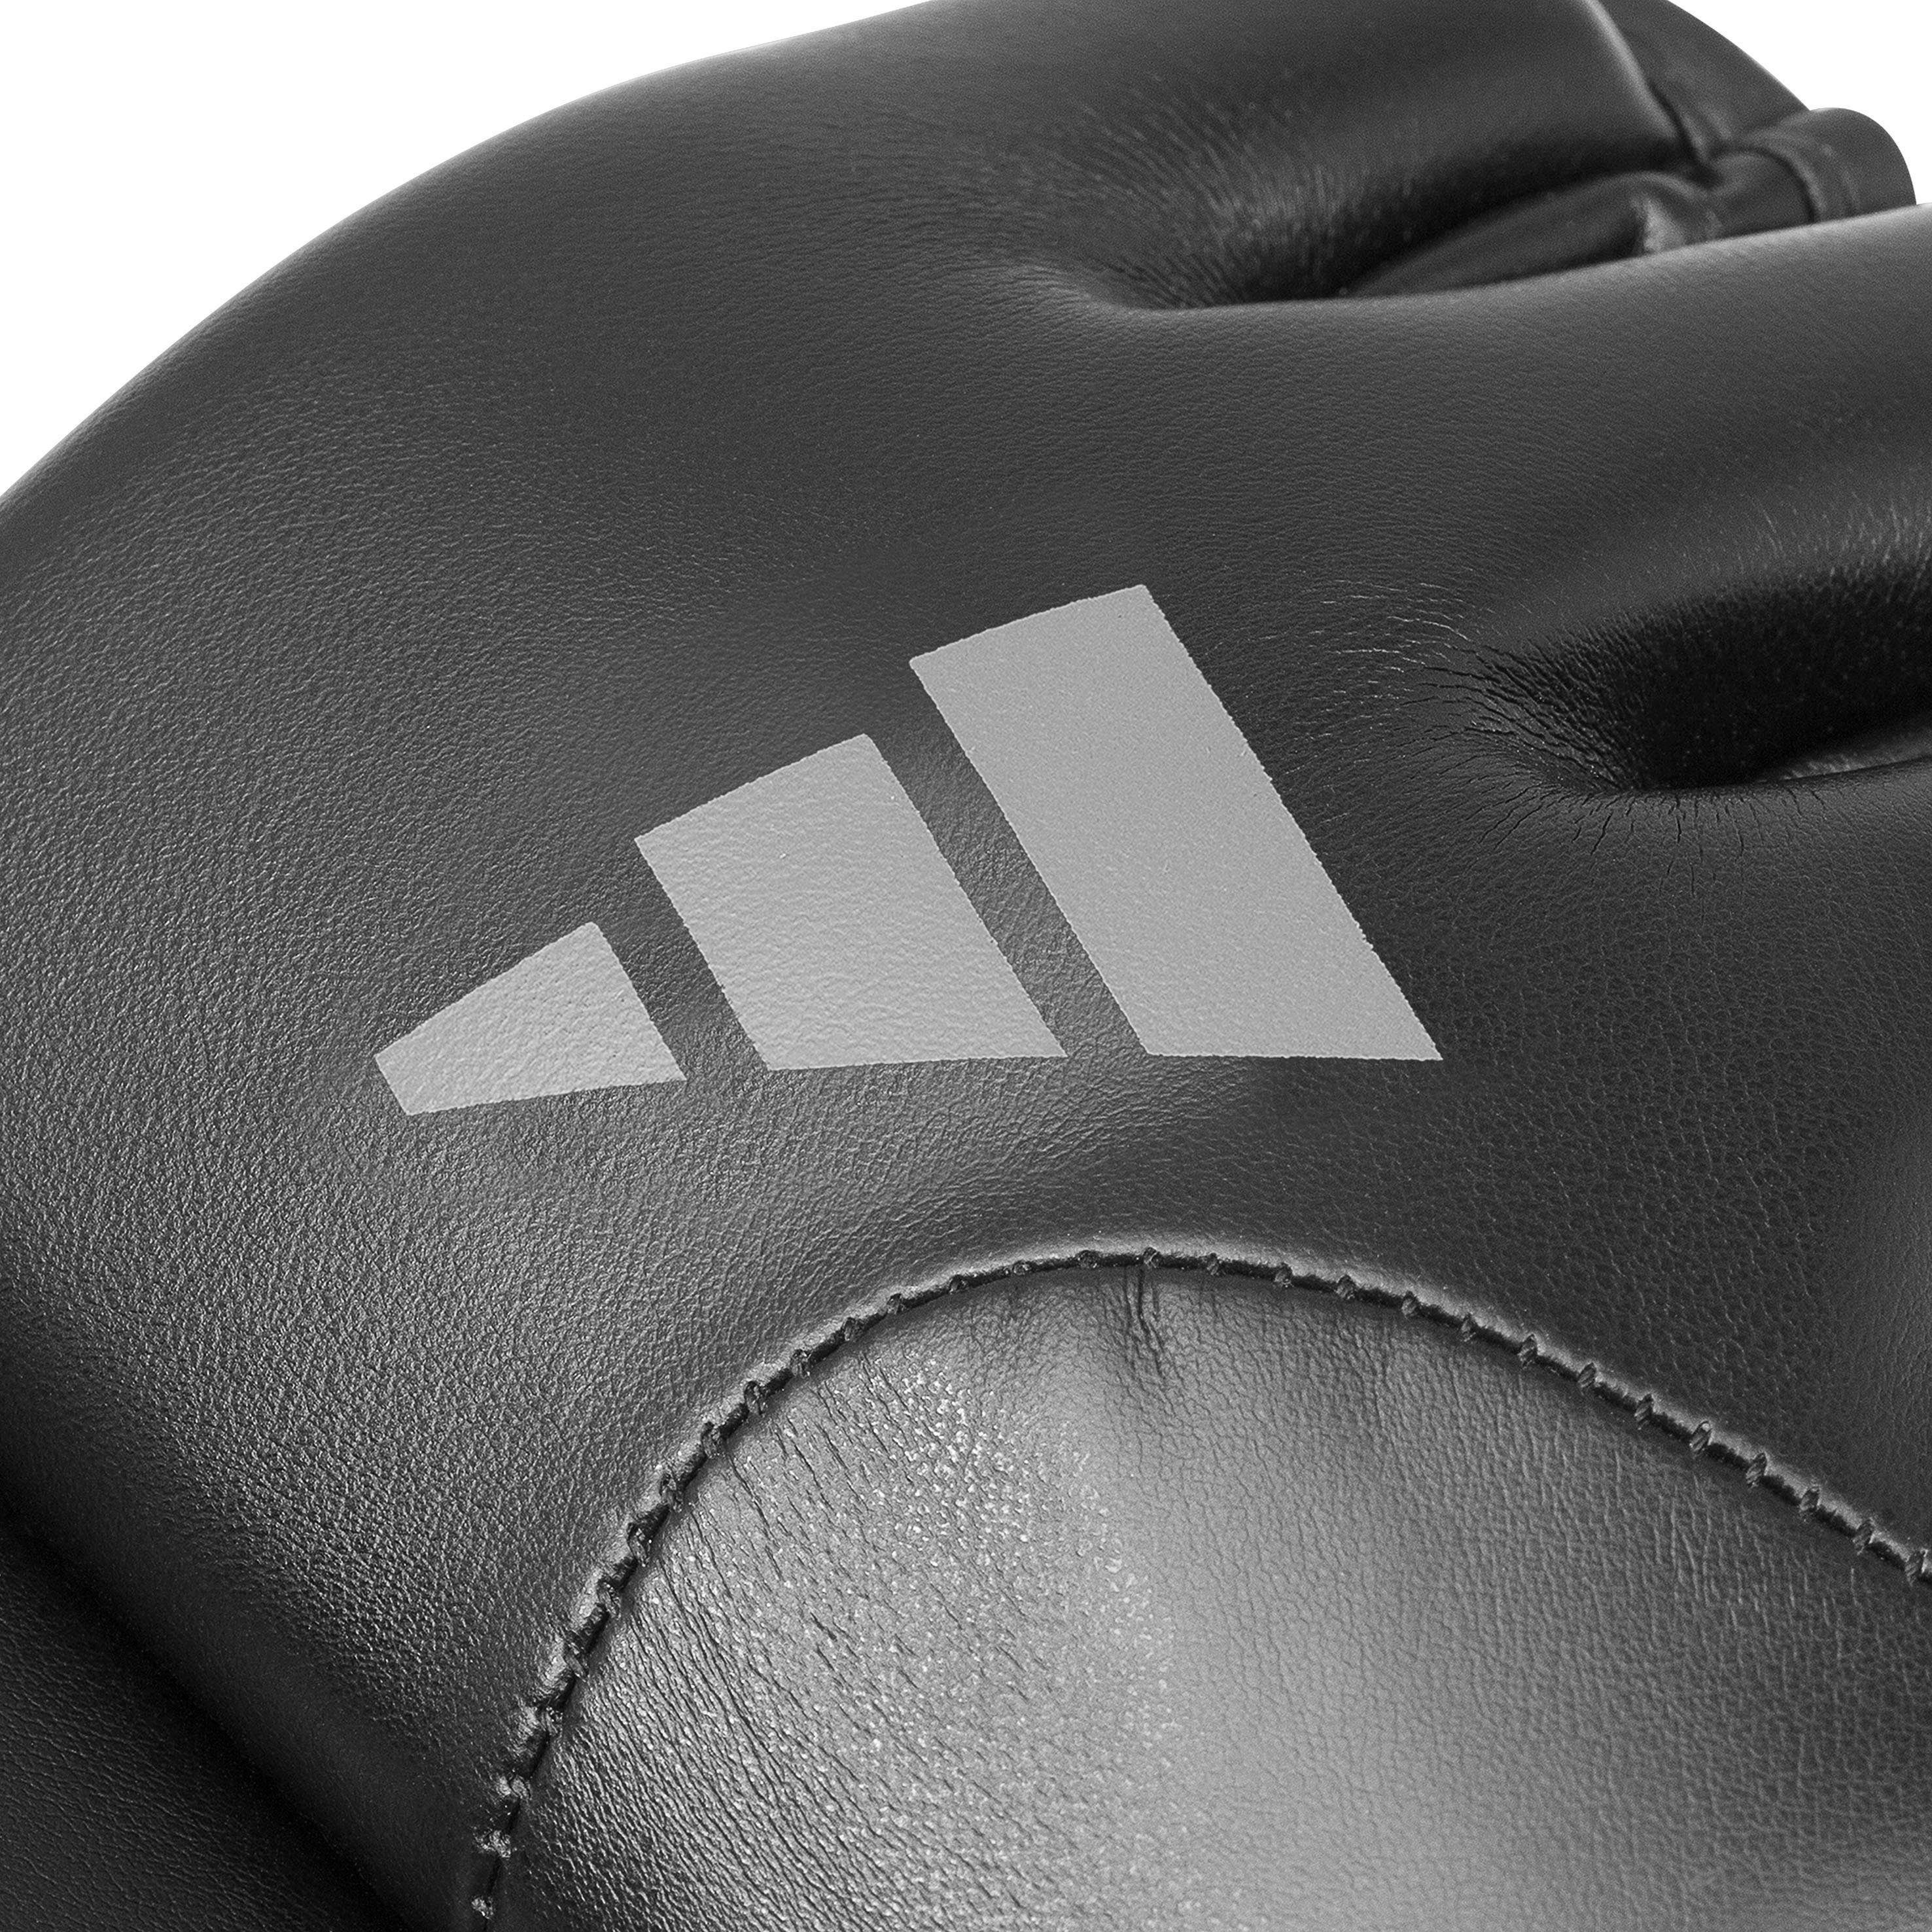 adidas Performance Speed MMA-Handschuhe G150 Tilt